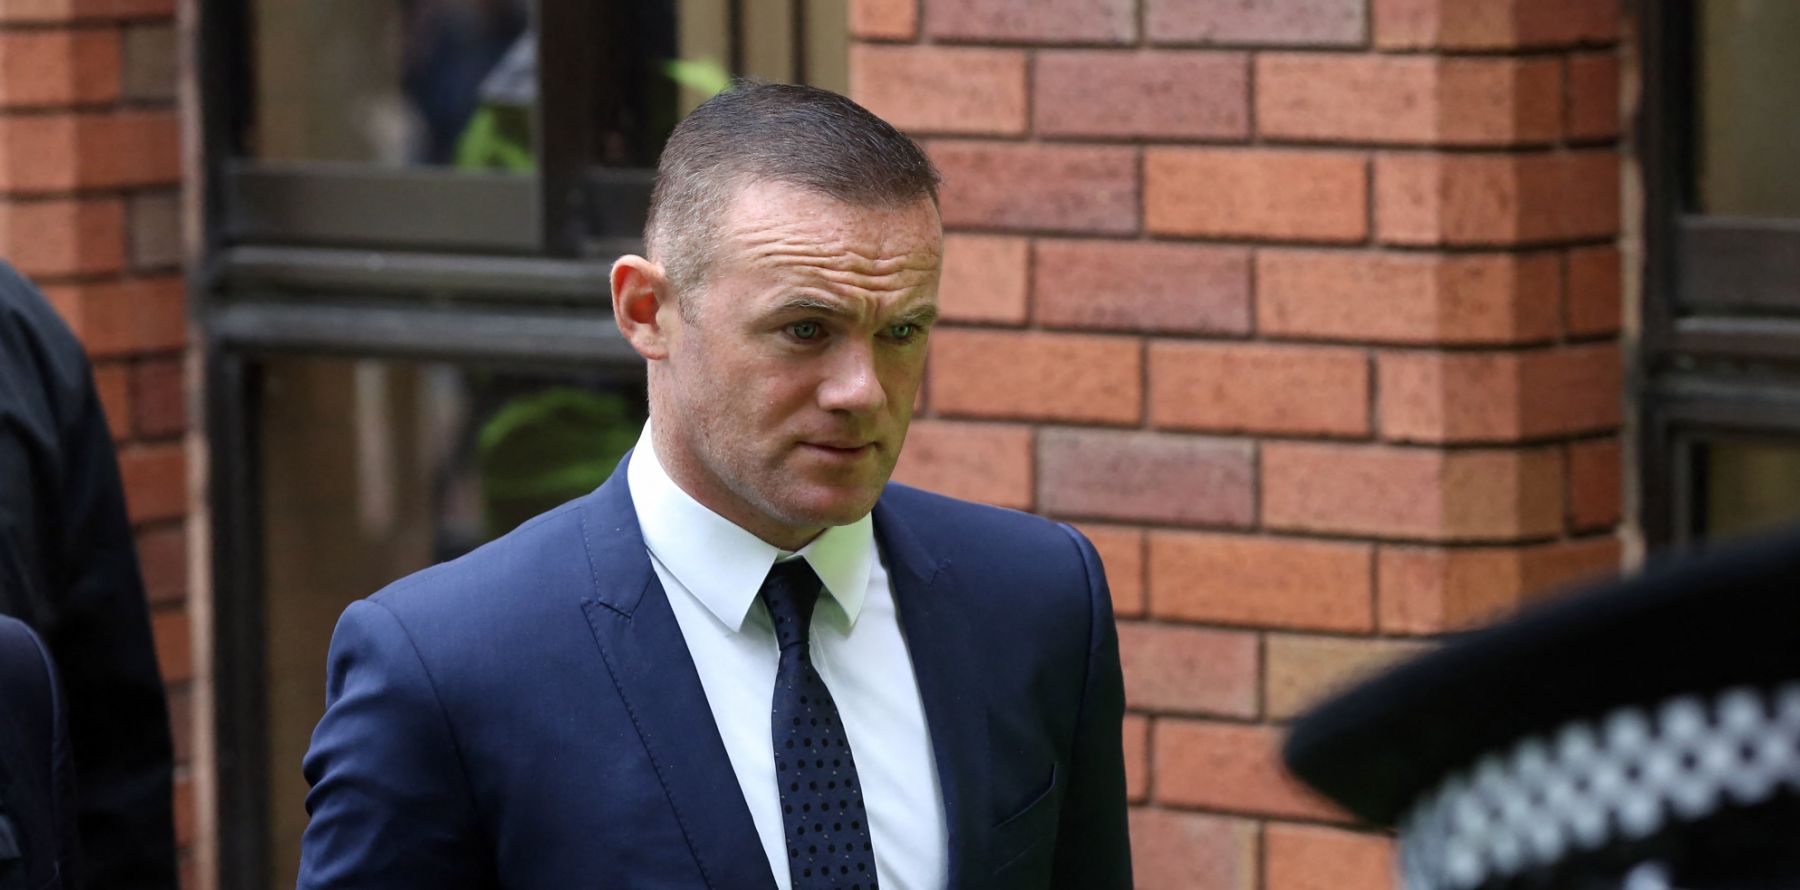 Wayne Rooney victime de chantage après une nuit à l'hôtel ...